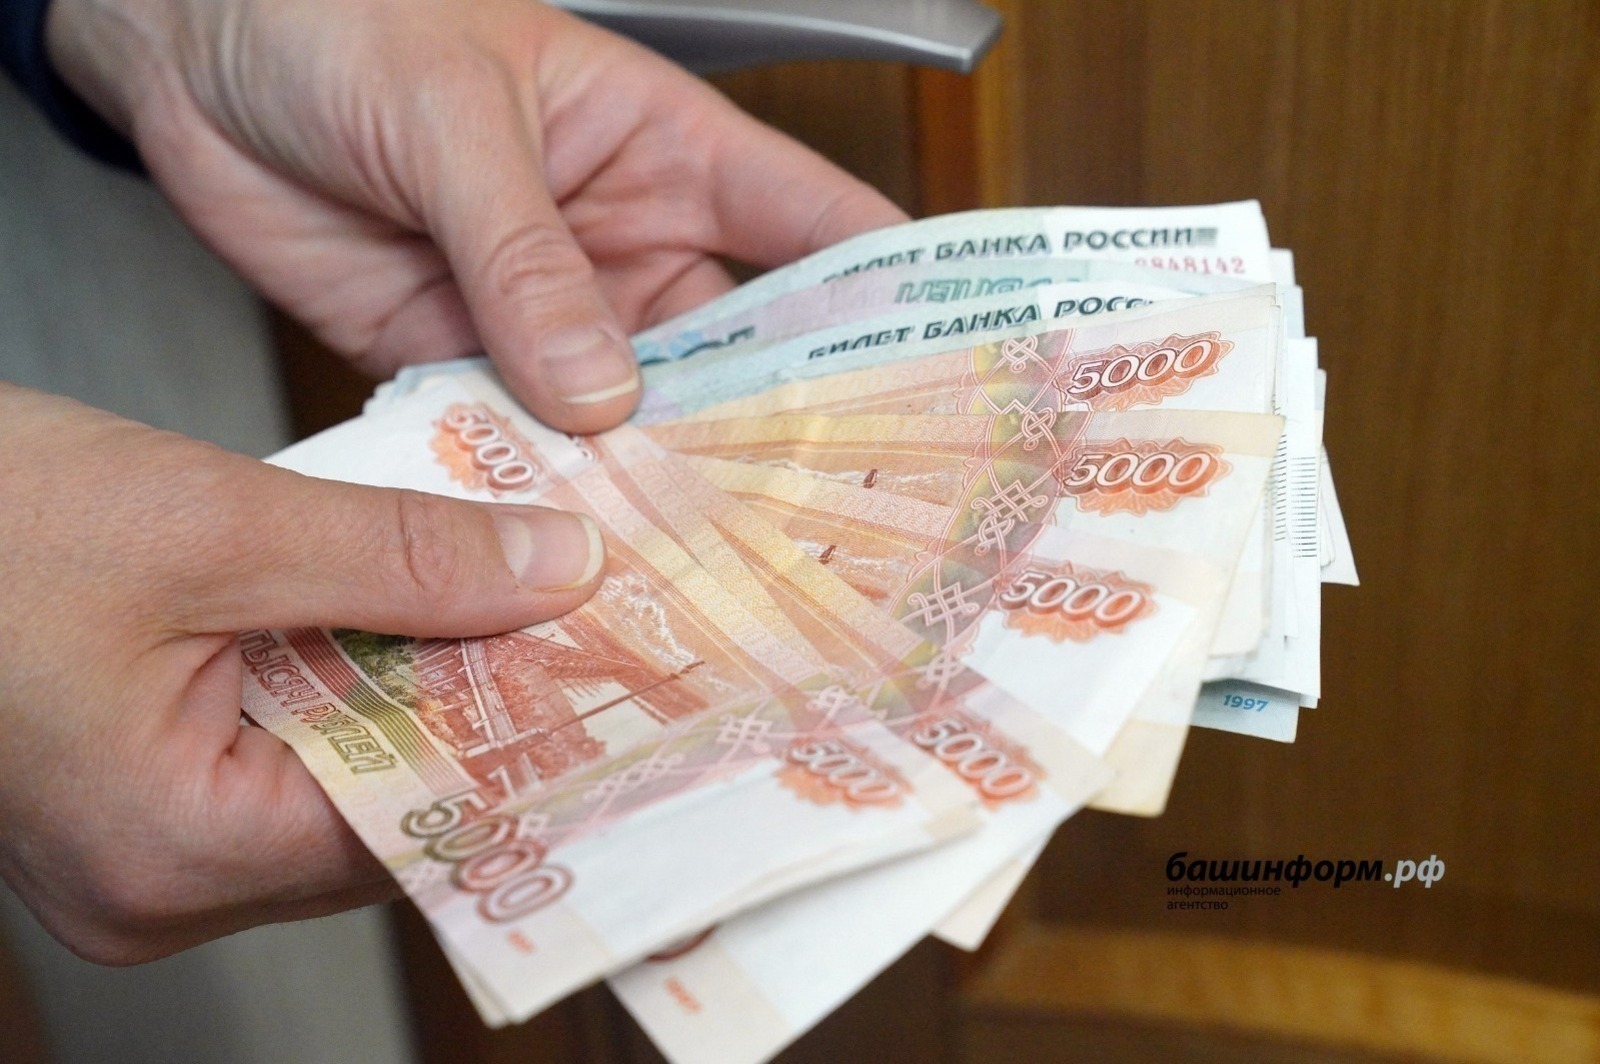 2 млн рублей за сутки отдали мошенникам жители Башкирии